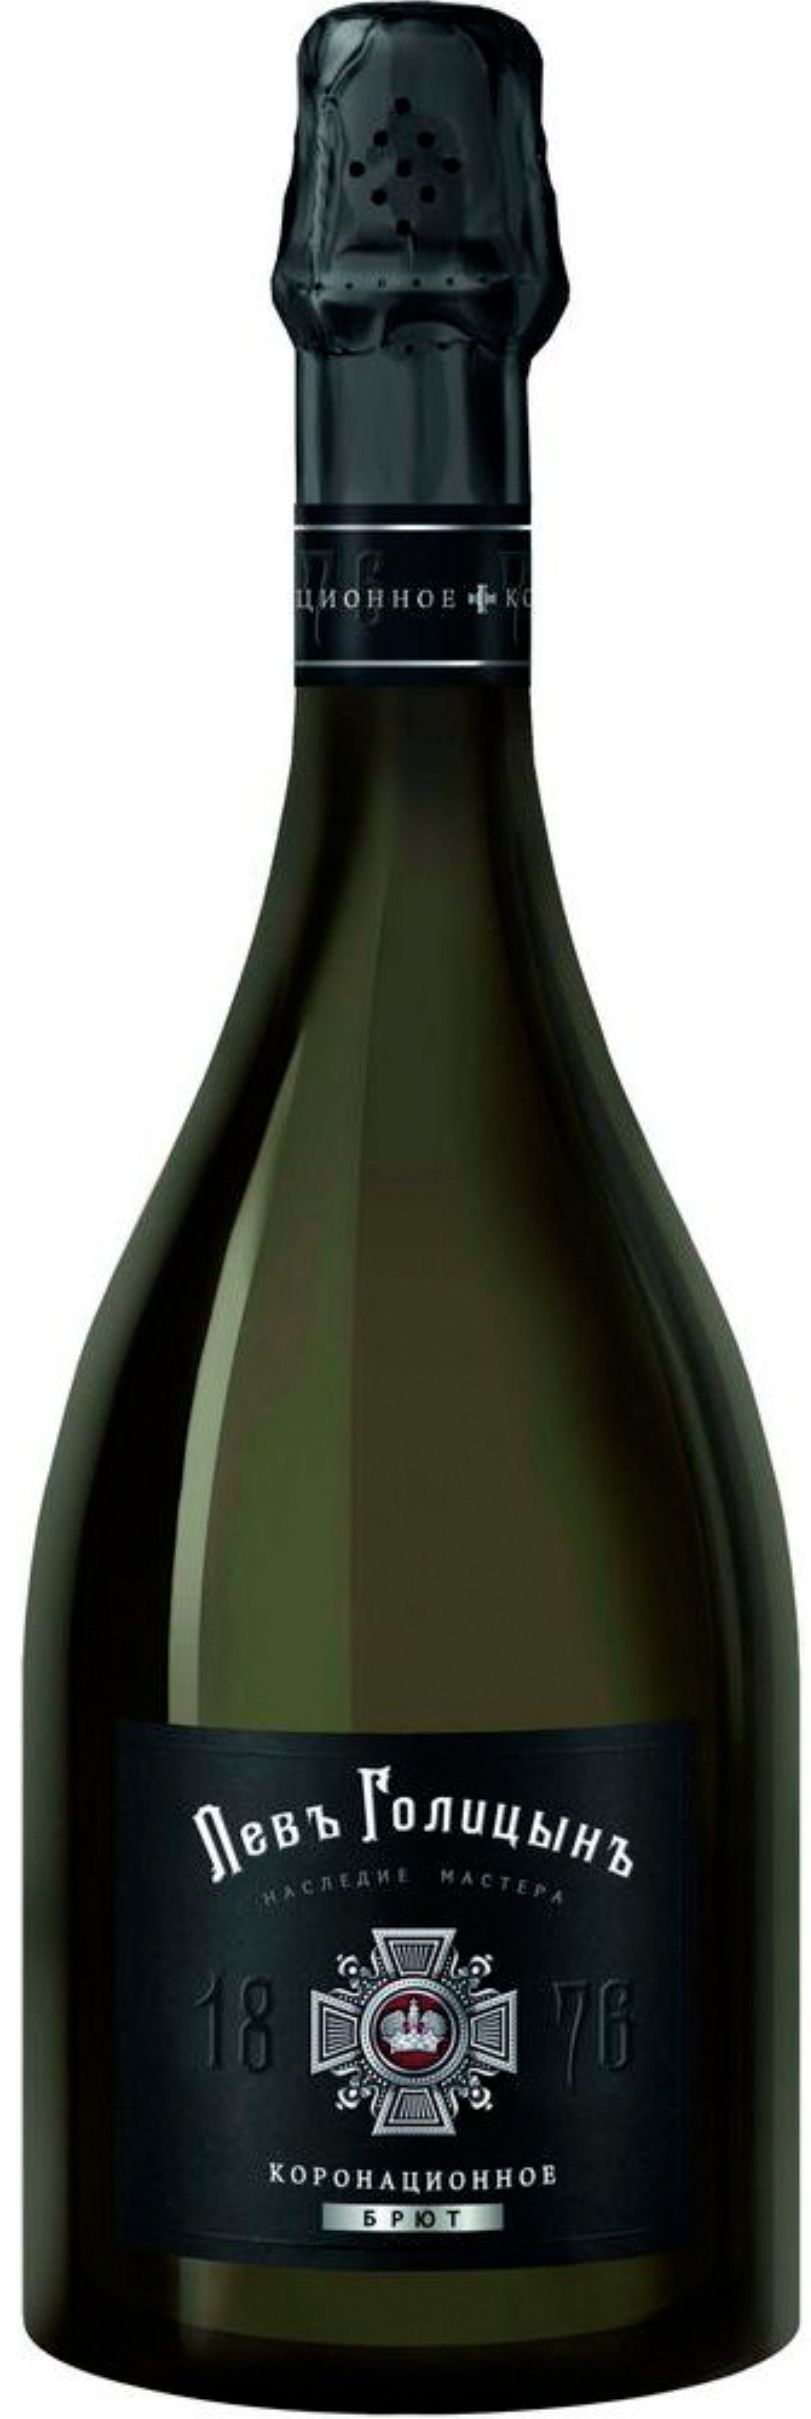 Игристое вино Наследие Мастера "Левъ Голицынъ Коронационное", белое брют, 0.75 л